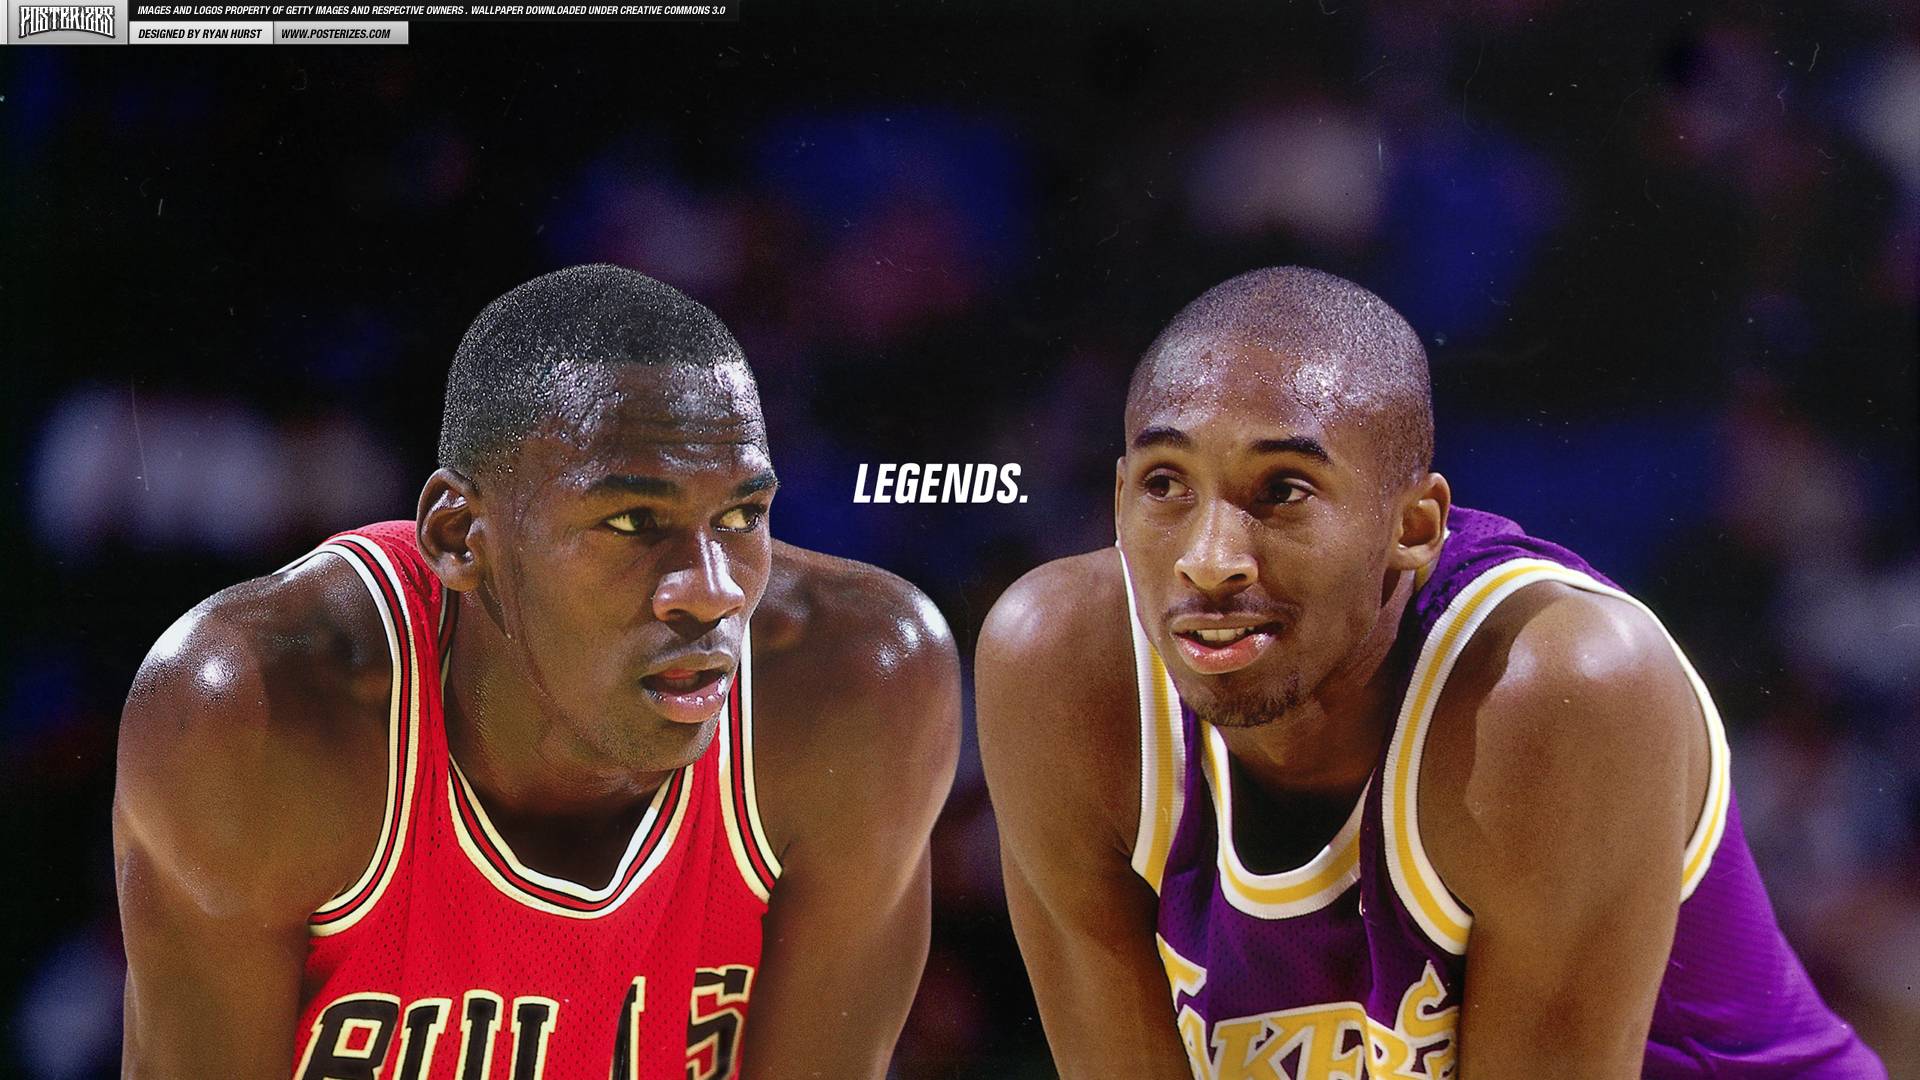 Download 1920x1080 Michael Jordan And Kobe Bryant Wallpaper